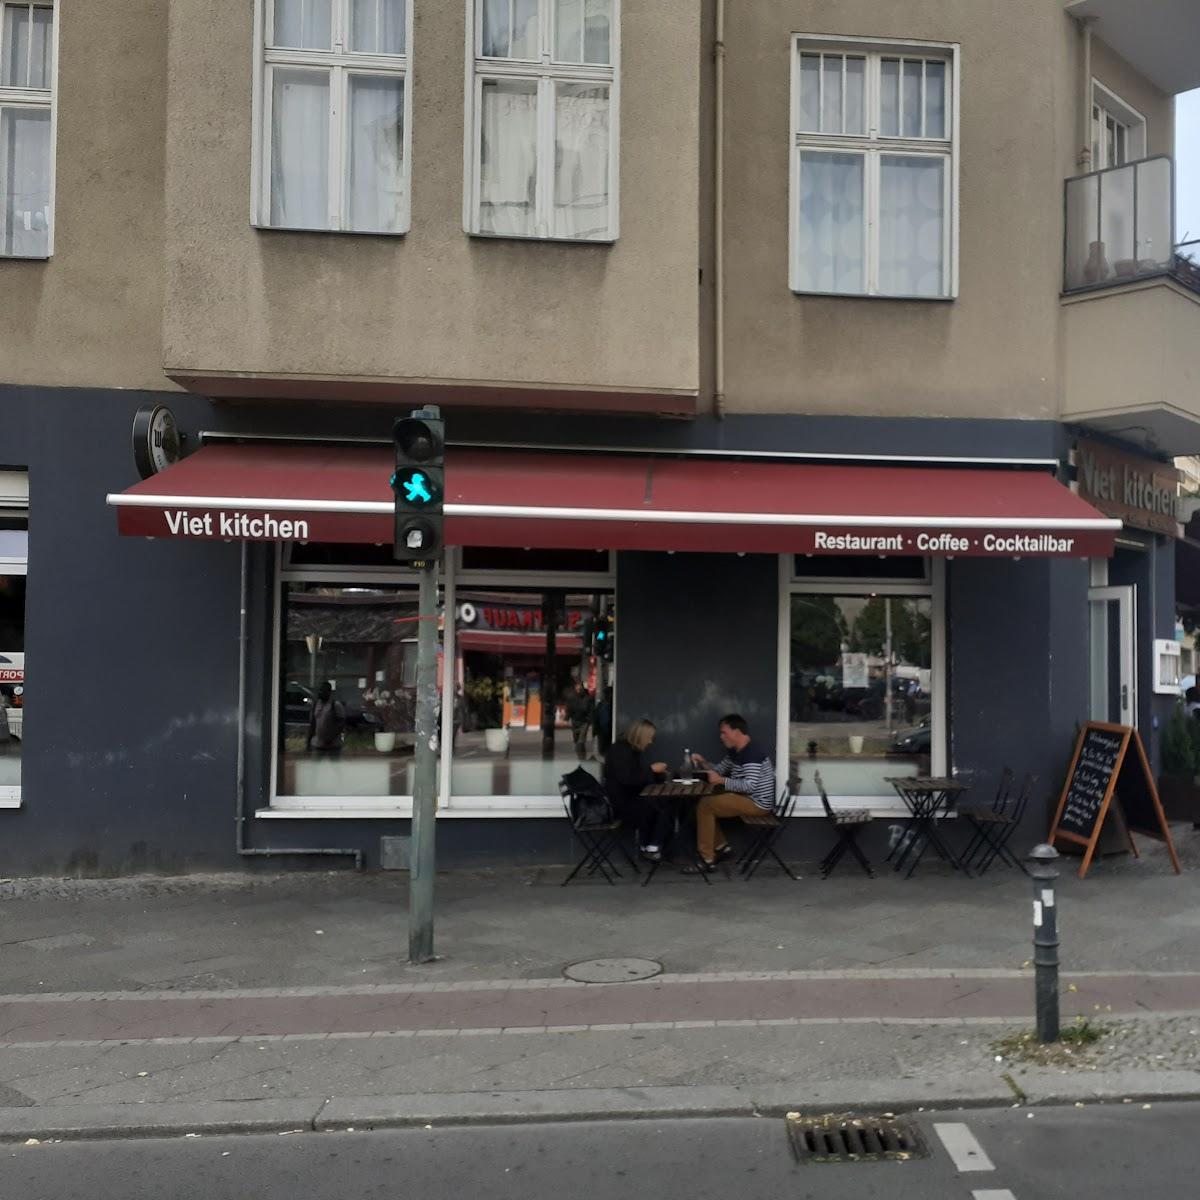 Restaurant "Viet Kitchen Restaurant" in Berlin